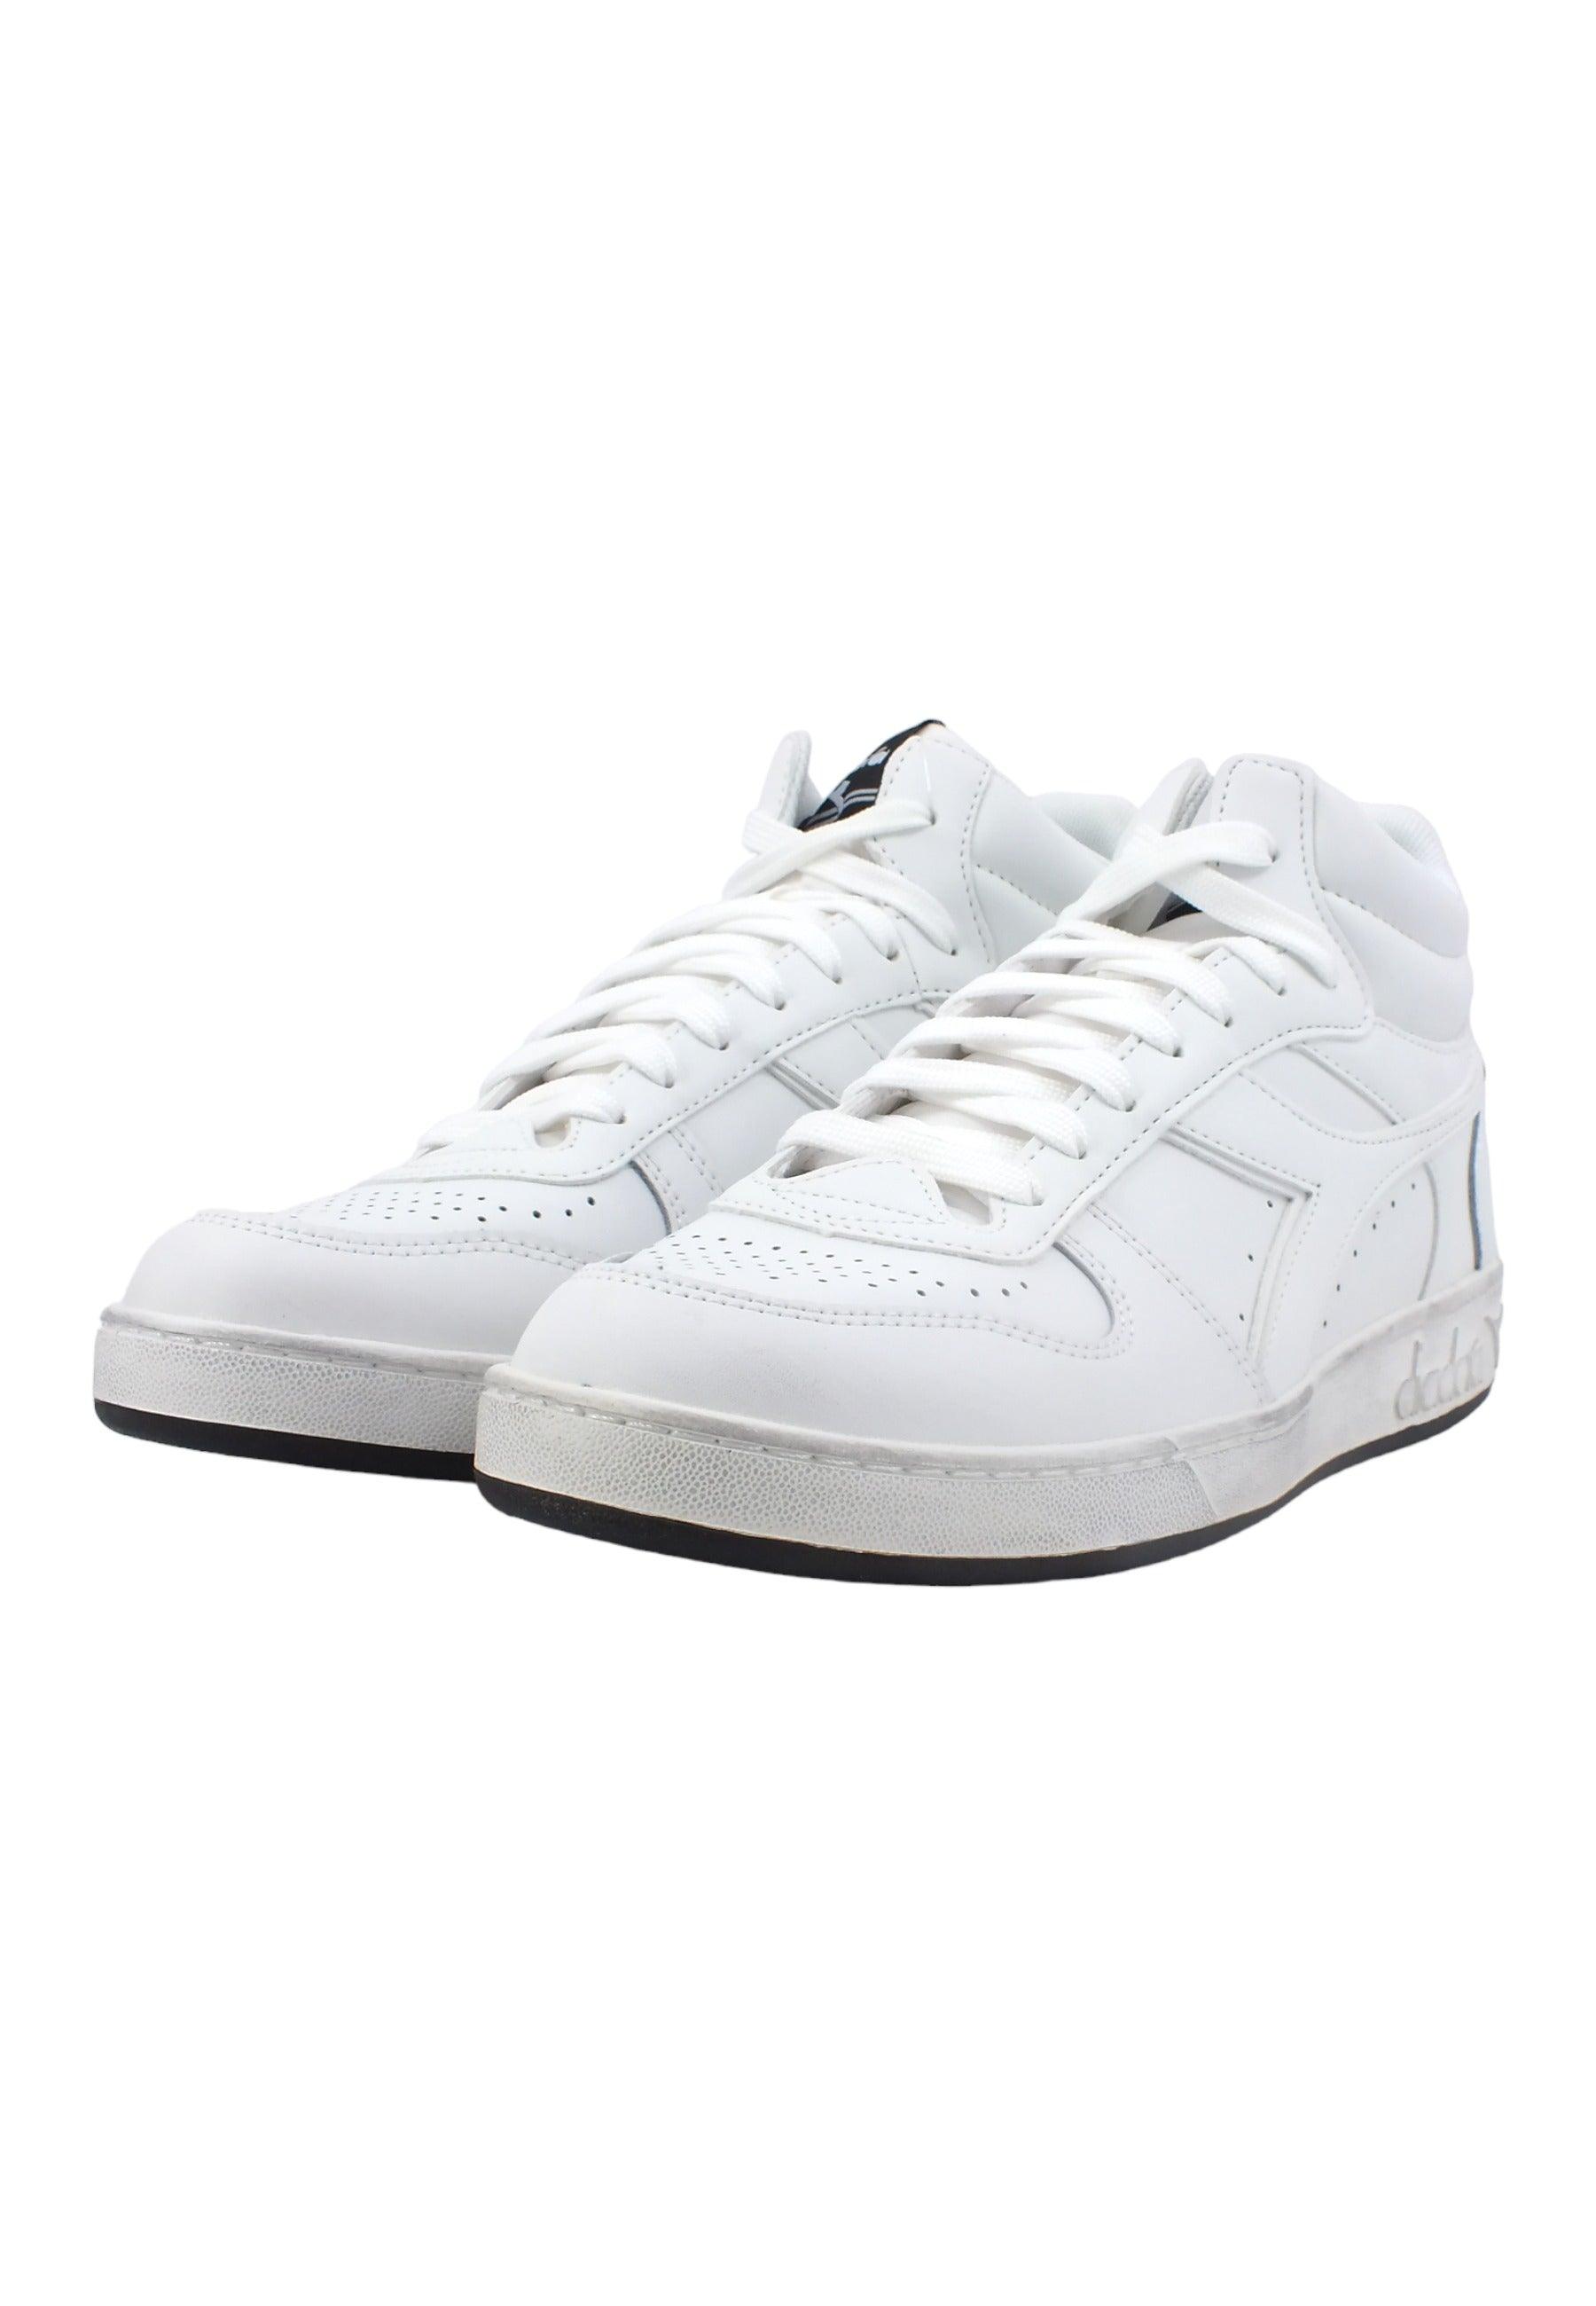 DIADORA Basket Sneaker Uomo White 501.17929701C6180 - Sandrini Calzature e Abbigliamento